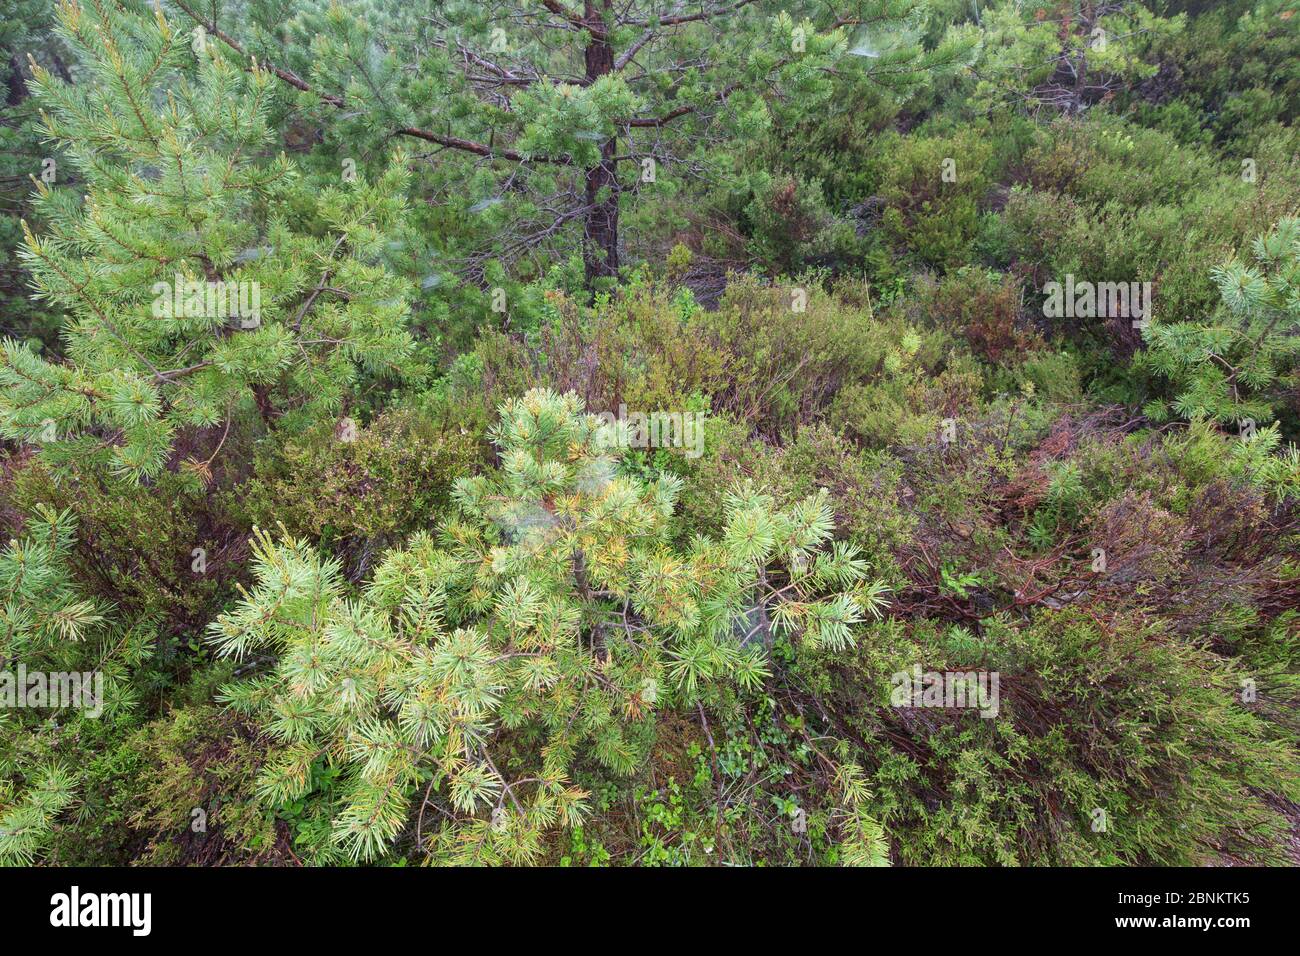 Section de fond de forêt avec de jeunes pins écossais (Pinus sylvestris) et végétation régénérante, forêt de Rothiemurchus, parc national de Cairngorms, Écosse Banque D'Images